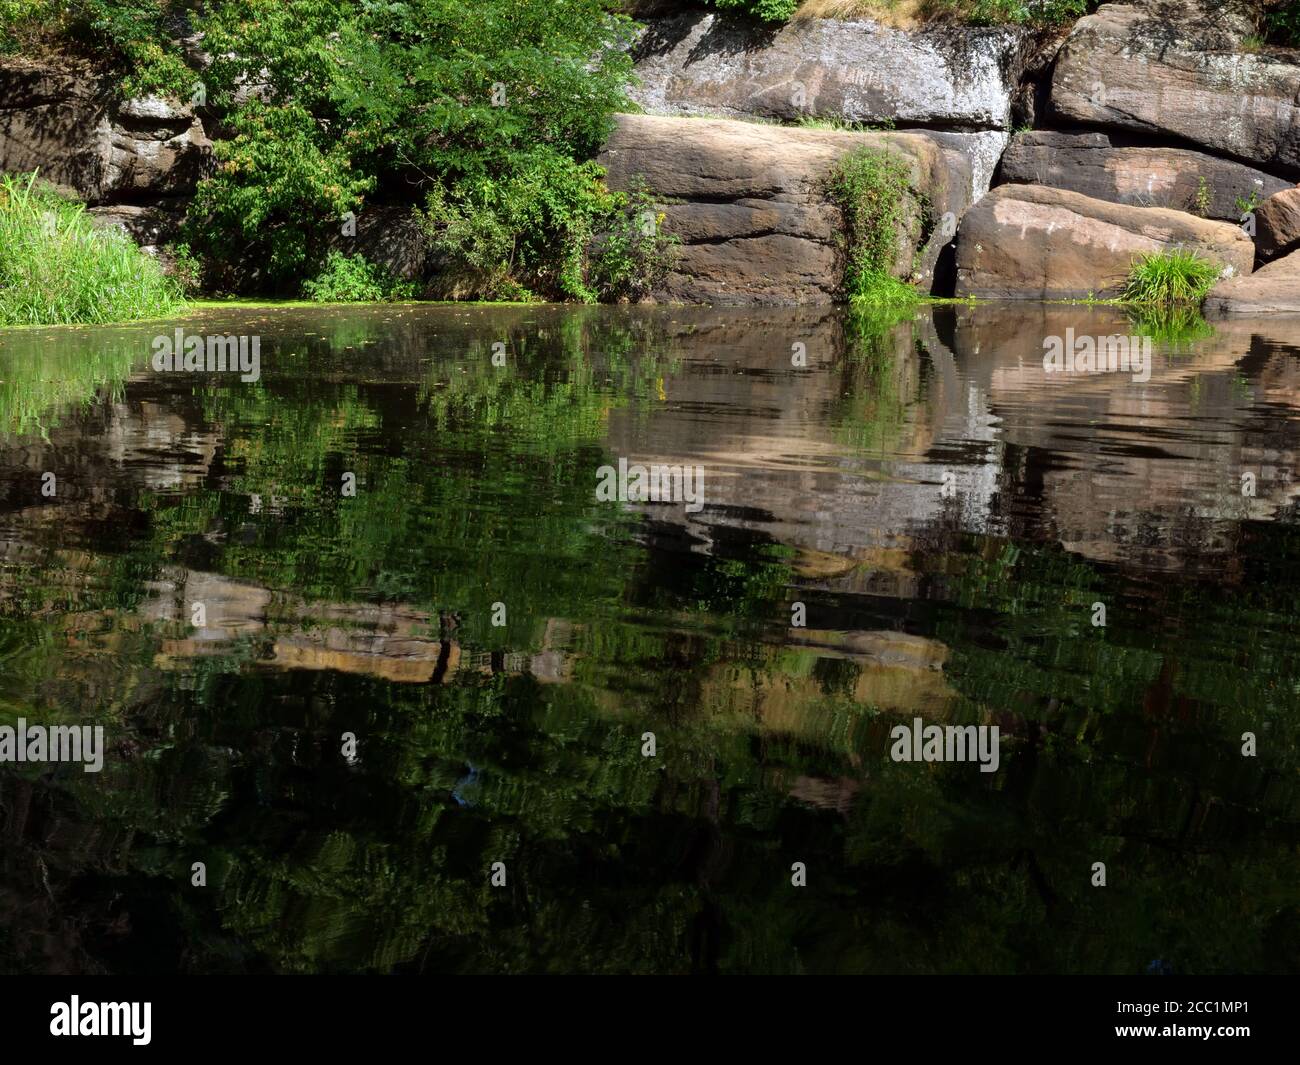 Rivière européenne d'été avec des bancs de pierre et des arbres verts. Banque D'Images